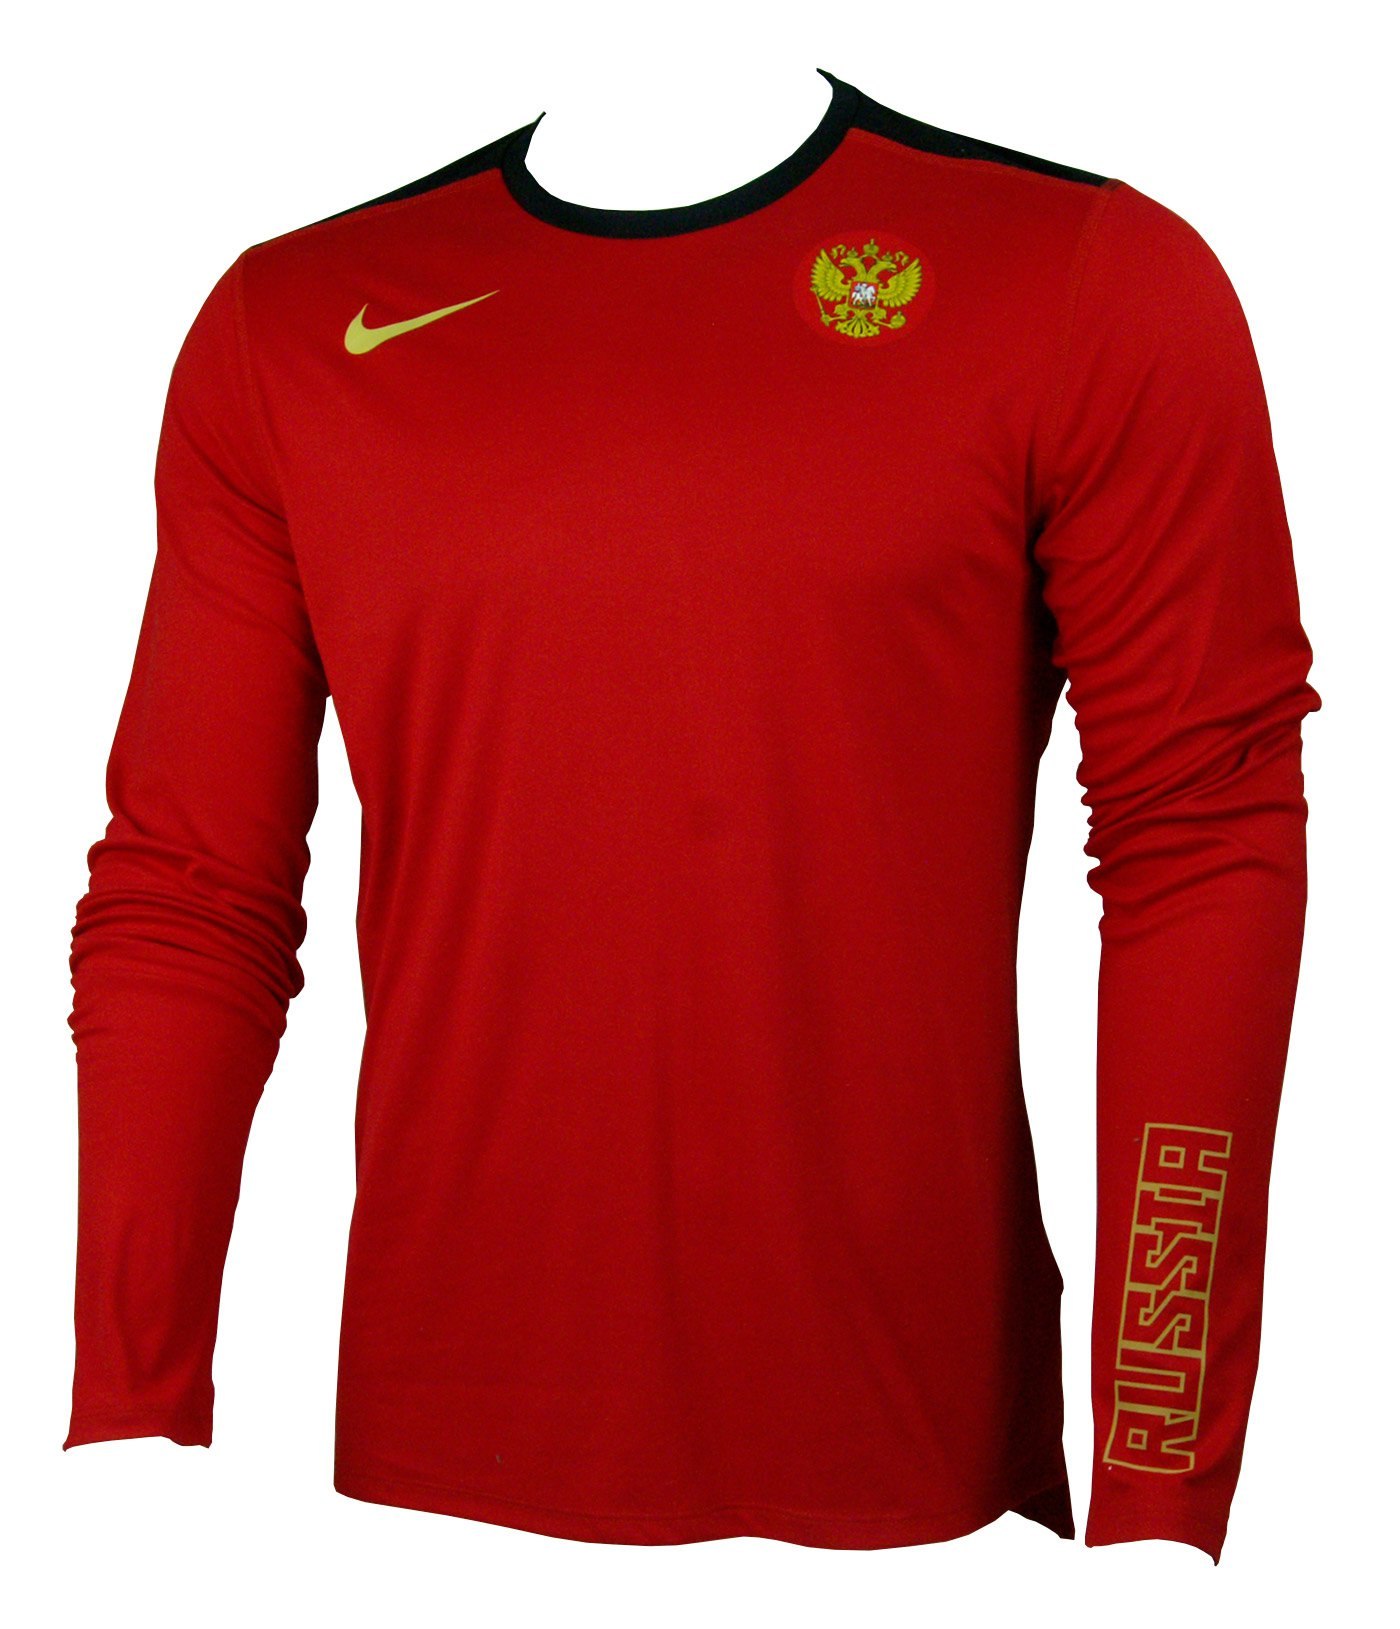 Сайт найк россия. Кофта Nike Nike. Лонгслив Russia Nike. Nike Dri Fit кофта красная. Боксерская кофта Nike Russia.